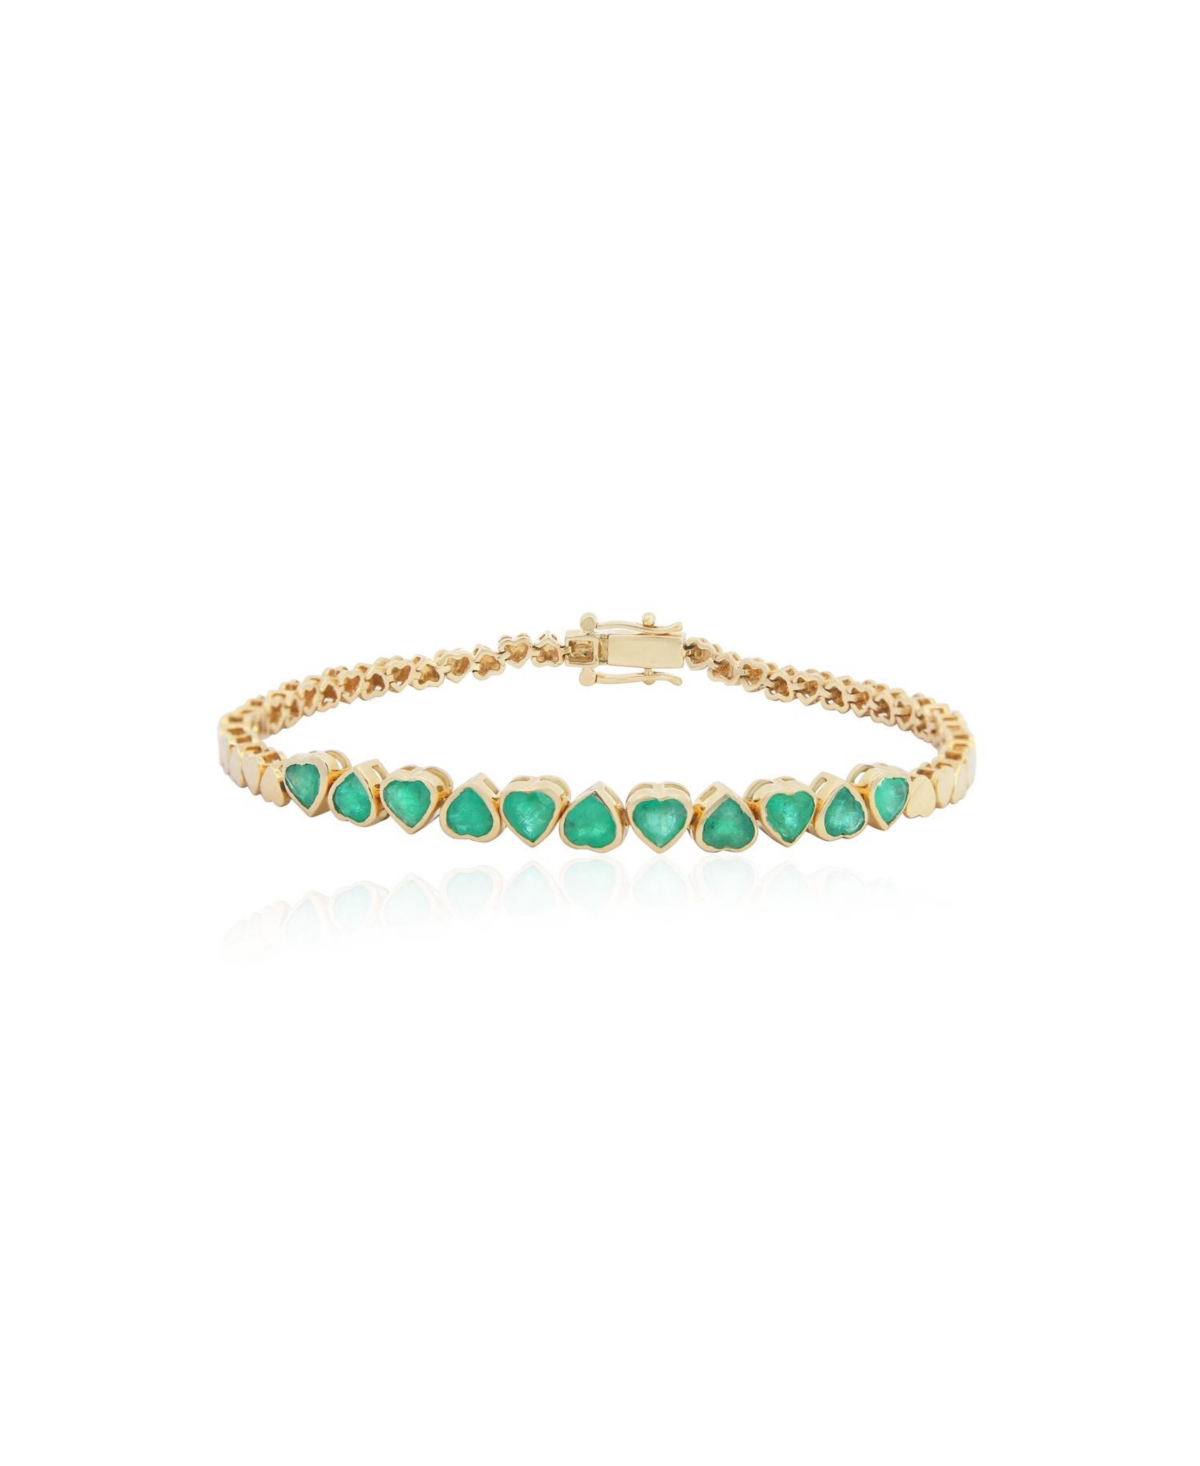 Emerald Heart Bracelet - Green